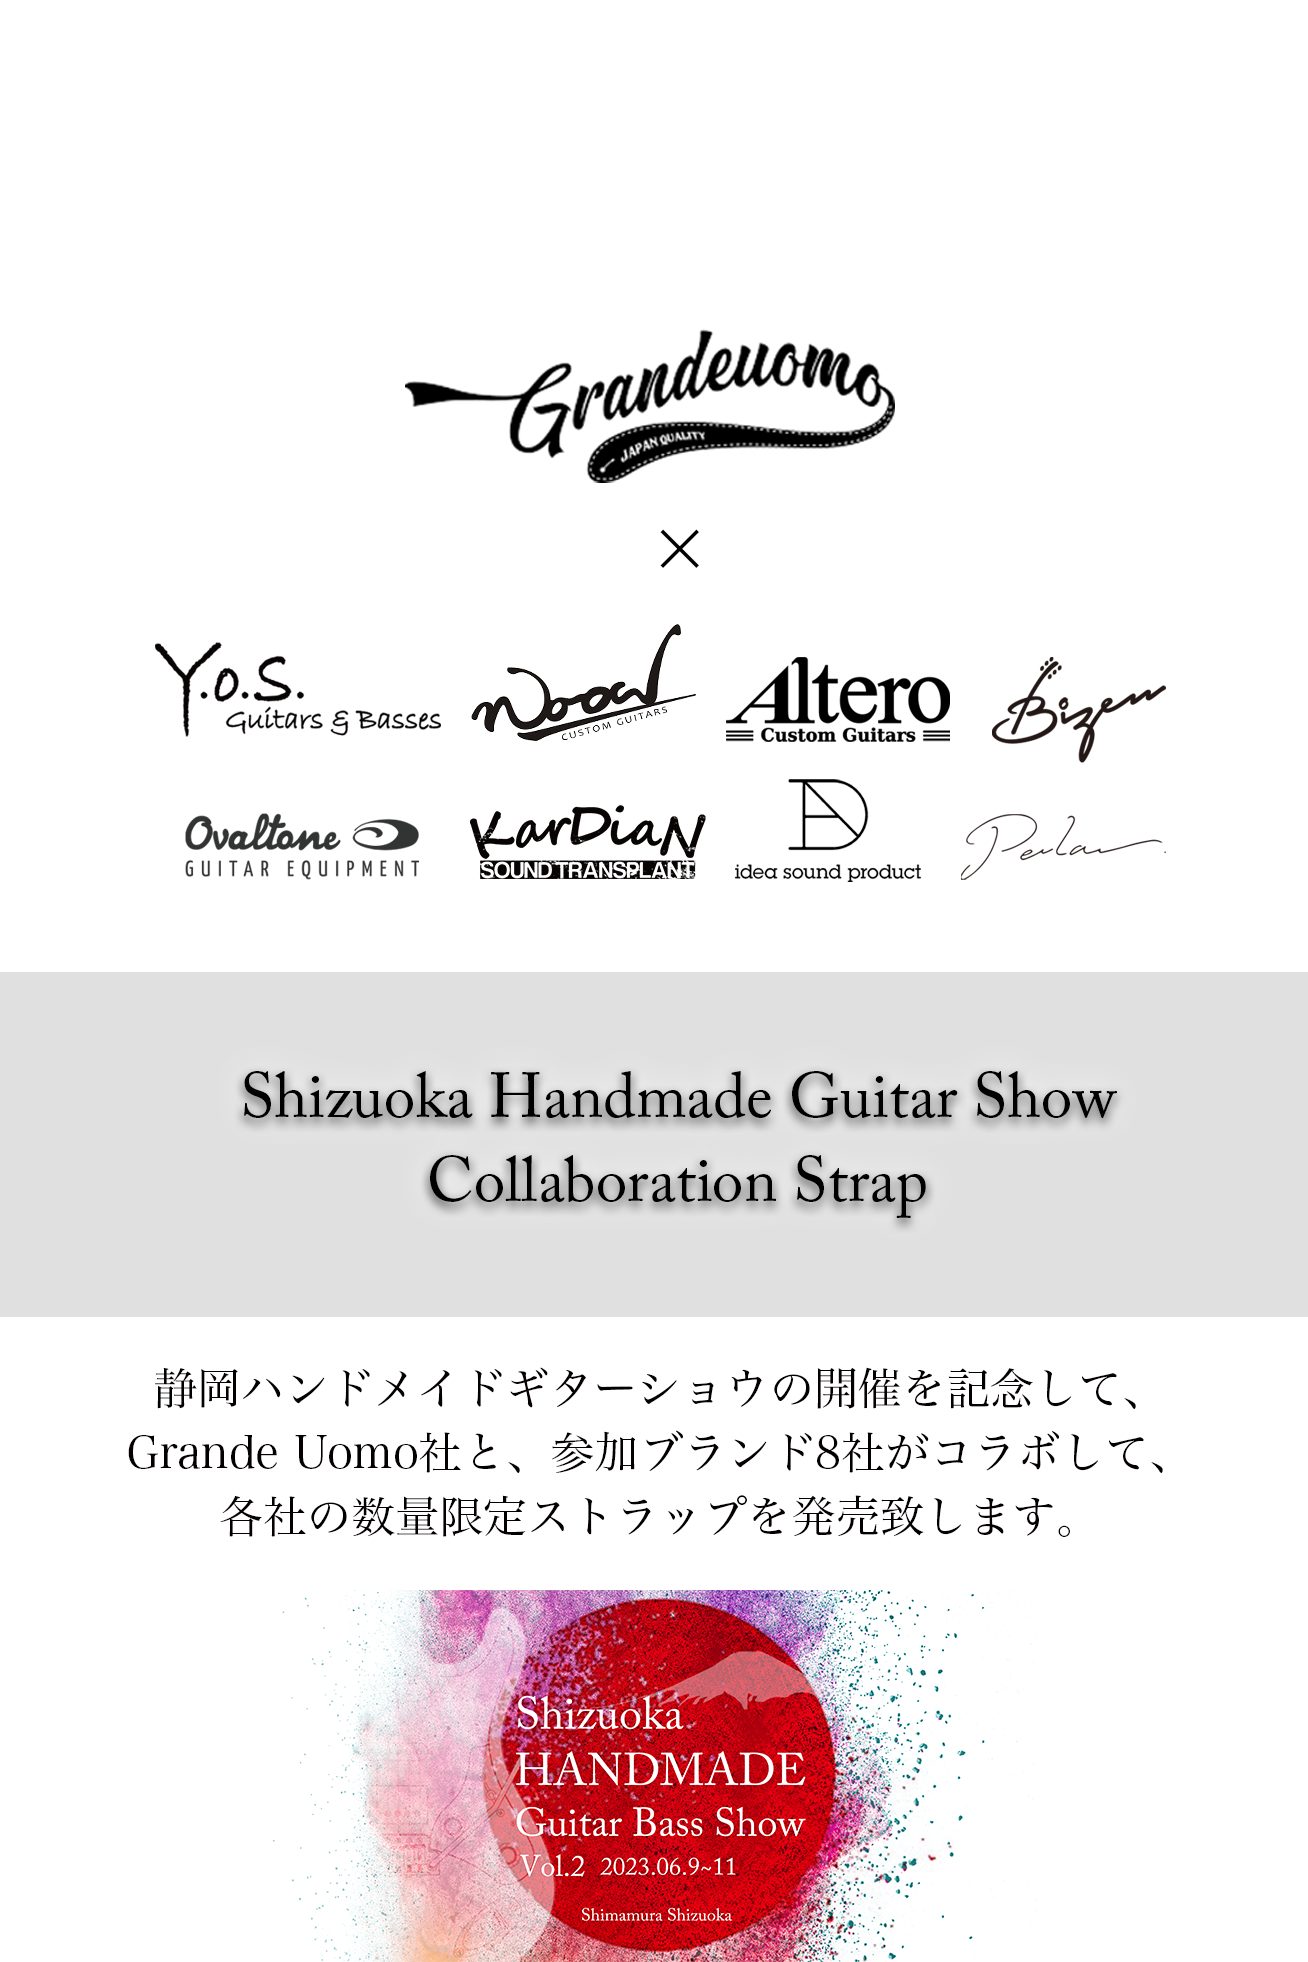 2023/06/09～6/11に静岡パルコ店で開催する、SHIZUOKA Handmade Guitar Bass SHOW Vol.2 にて、Grande Uomo×参加ブランド 数量限定ストラップを数量限定販売致します。 販売開始日時：2022/06/09 10:00～サイズ：Sサイズ、Mサイズ […]